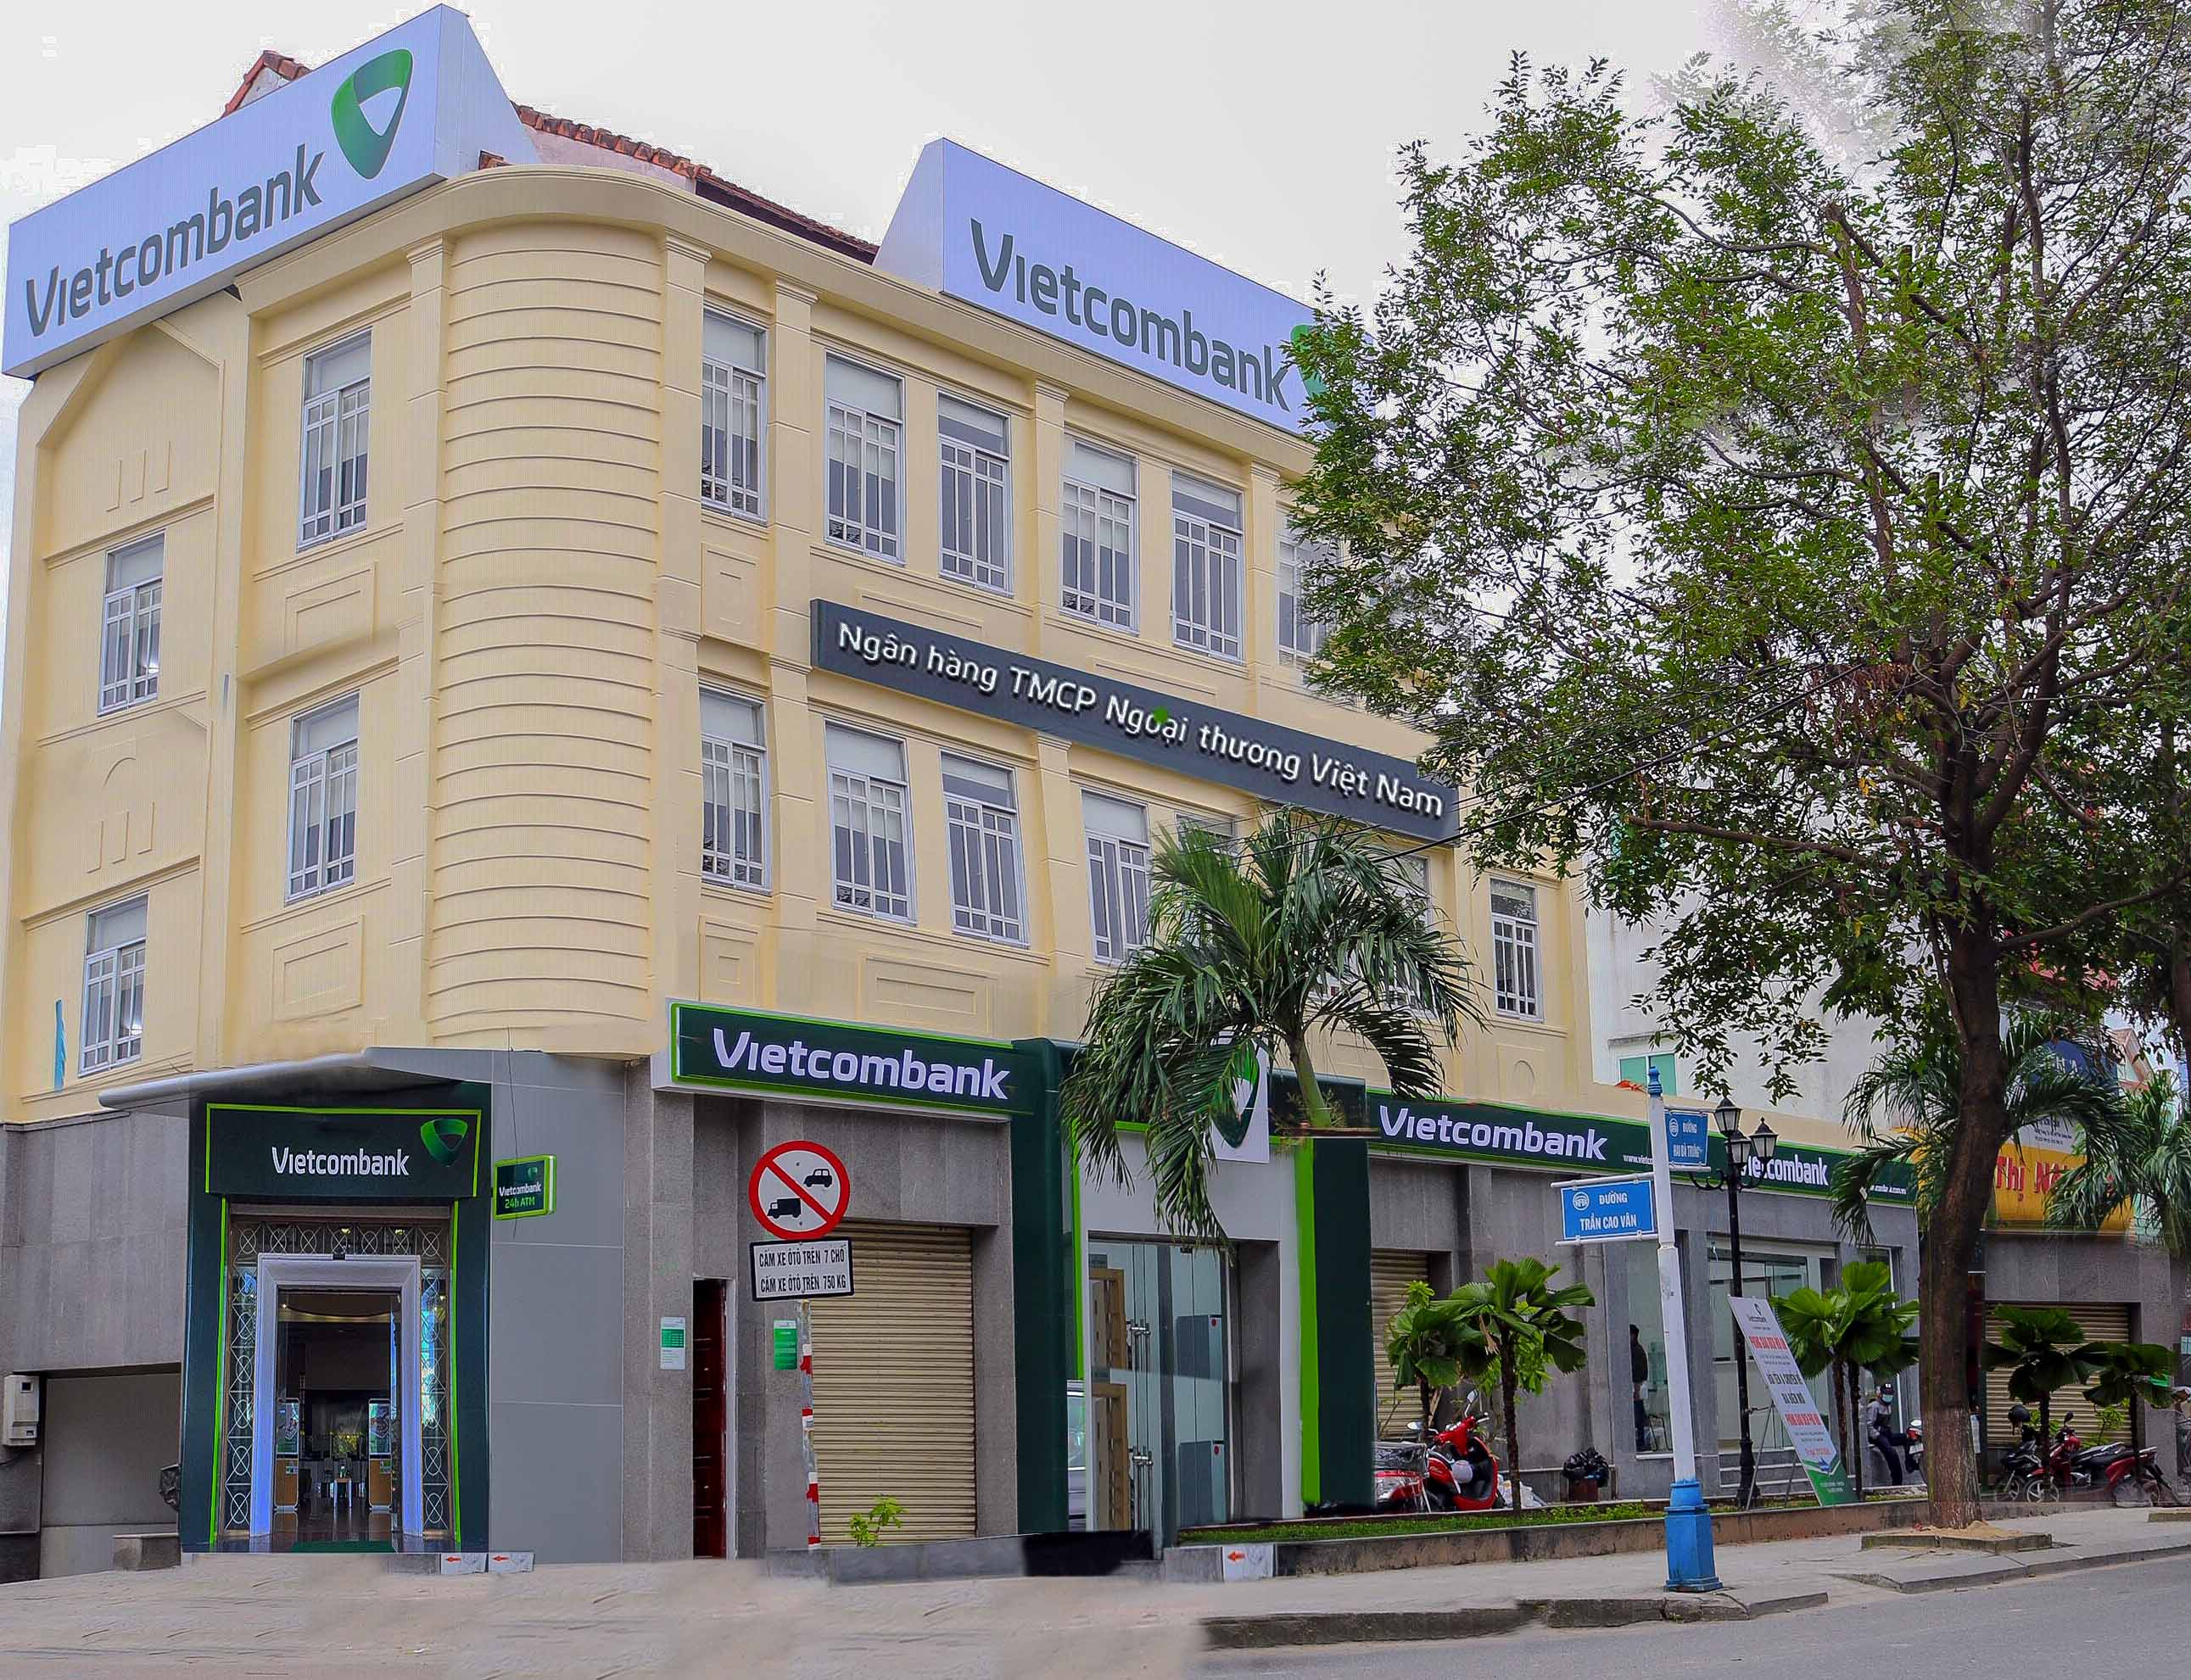  Vietcombank Hội An chính thức khai trương hoạt động từ 18/01/2021